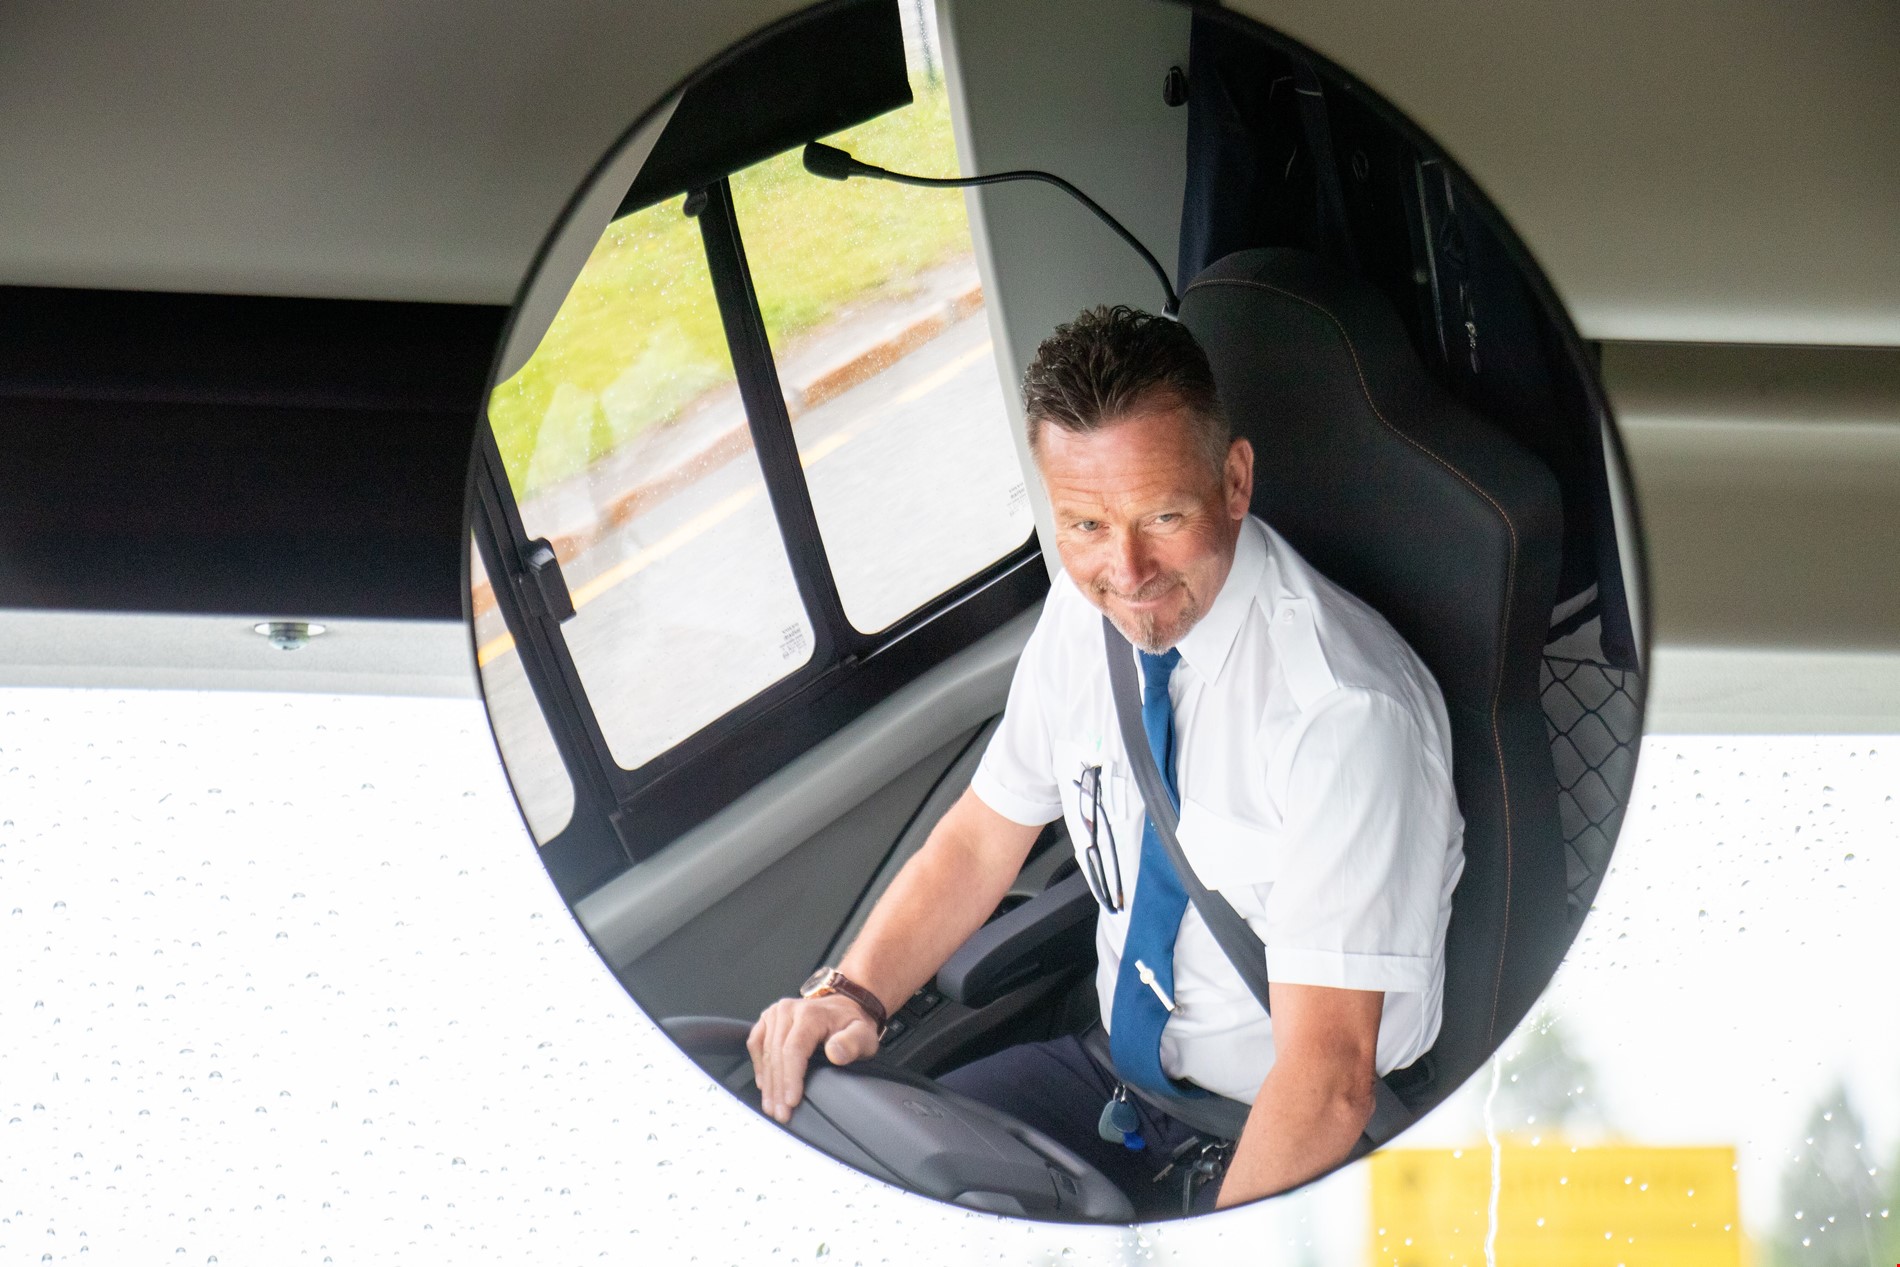 Håvard Røed, bussjåfør, sett fra et speil inne i bussen